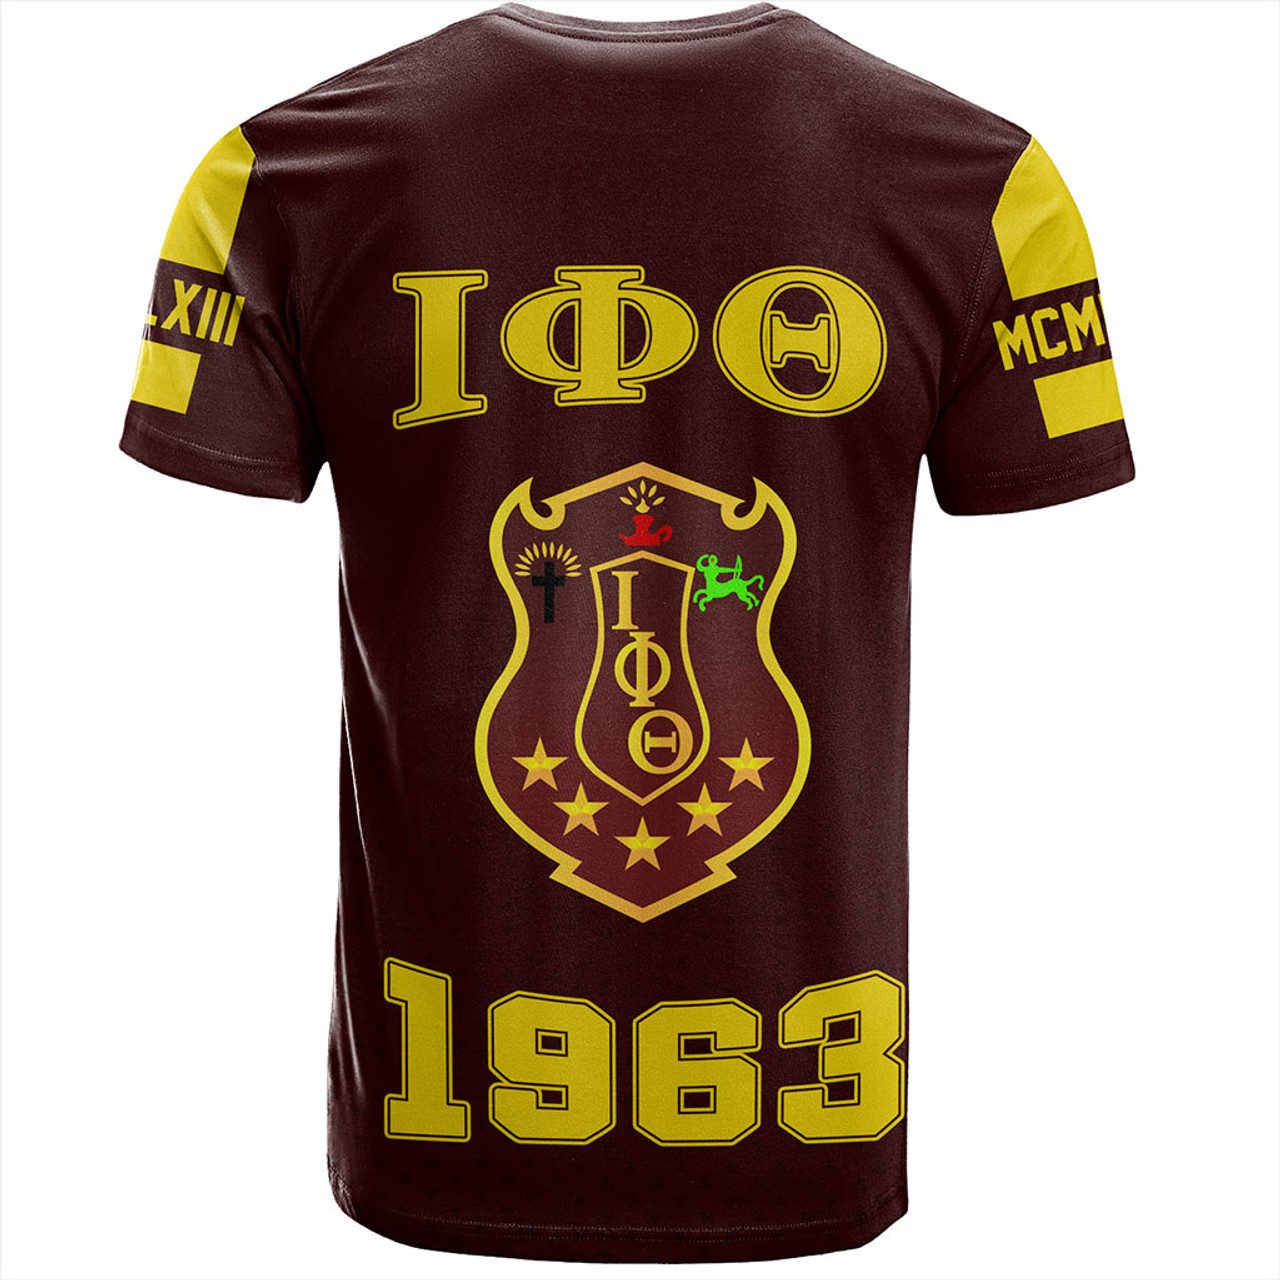 Iota Phi Theta T-Shirt MCM Style